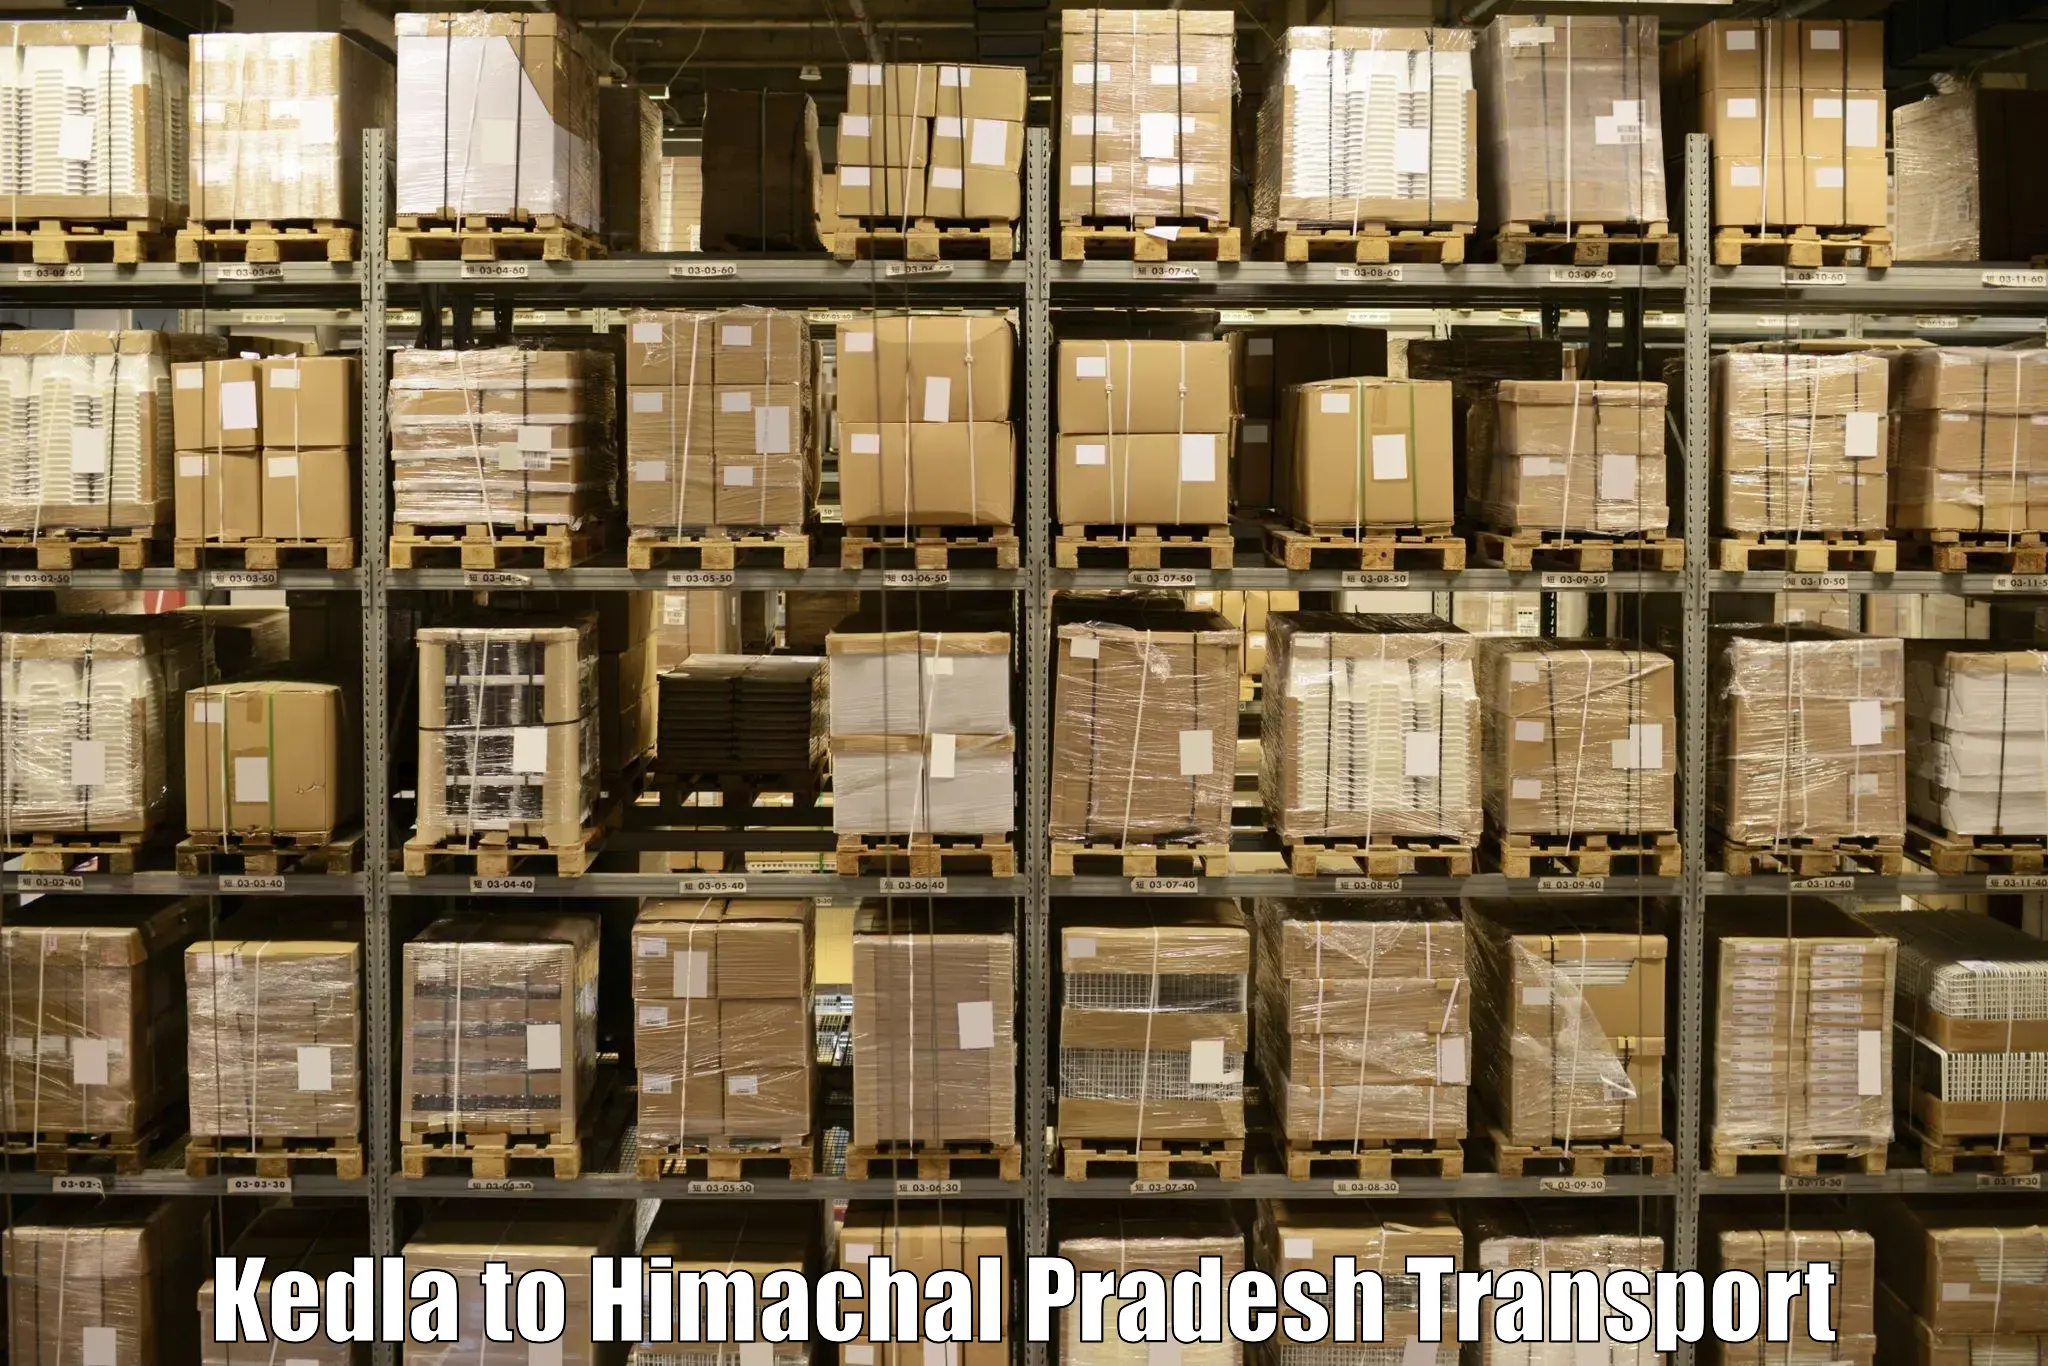 Goods delivery service Kedla to Kotkhai